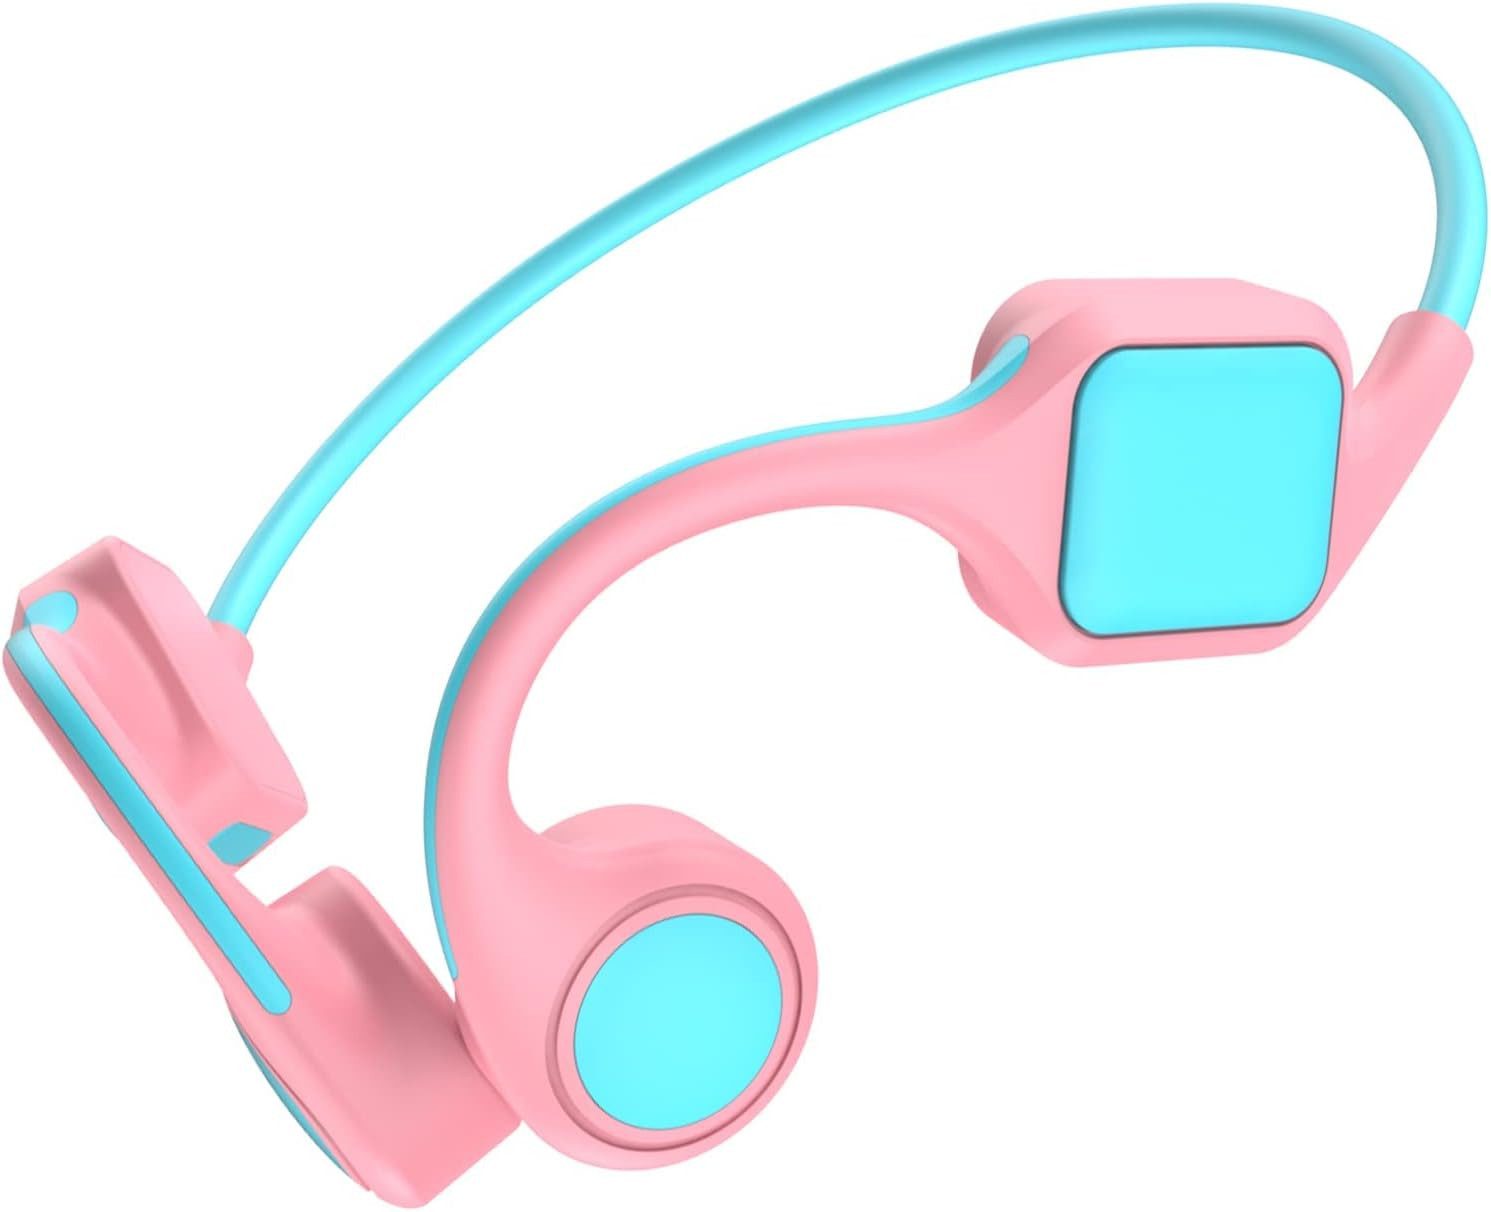 Xmenha Bluetooth 5.2-Chips für stabile Verbindung und klare Anrufe Open-Ear-Kopfhörer (Verbesserte Akkulaufzeit von 8 Stunden und einfache Touch-Steuerung für Musik, Anrufe und mehr bei kabellosen Kinderkopfhörern., Kinderkopfhörer: Sicheres Musikhören mit Knochenleitungsohrhörern)